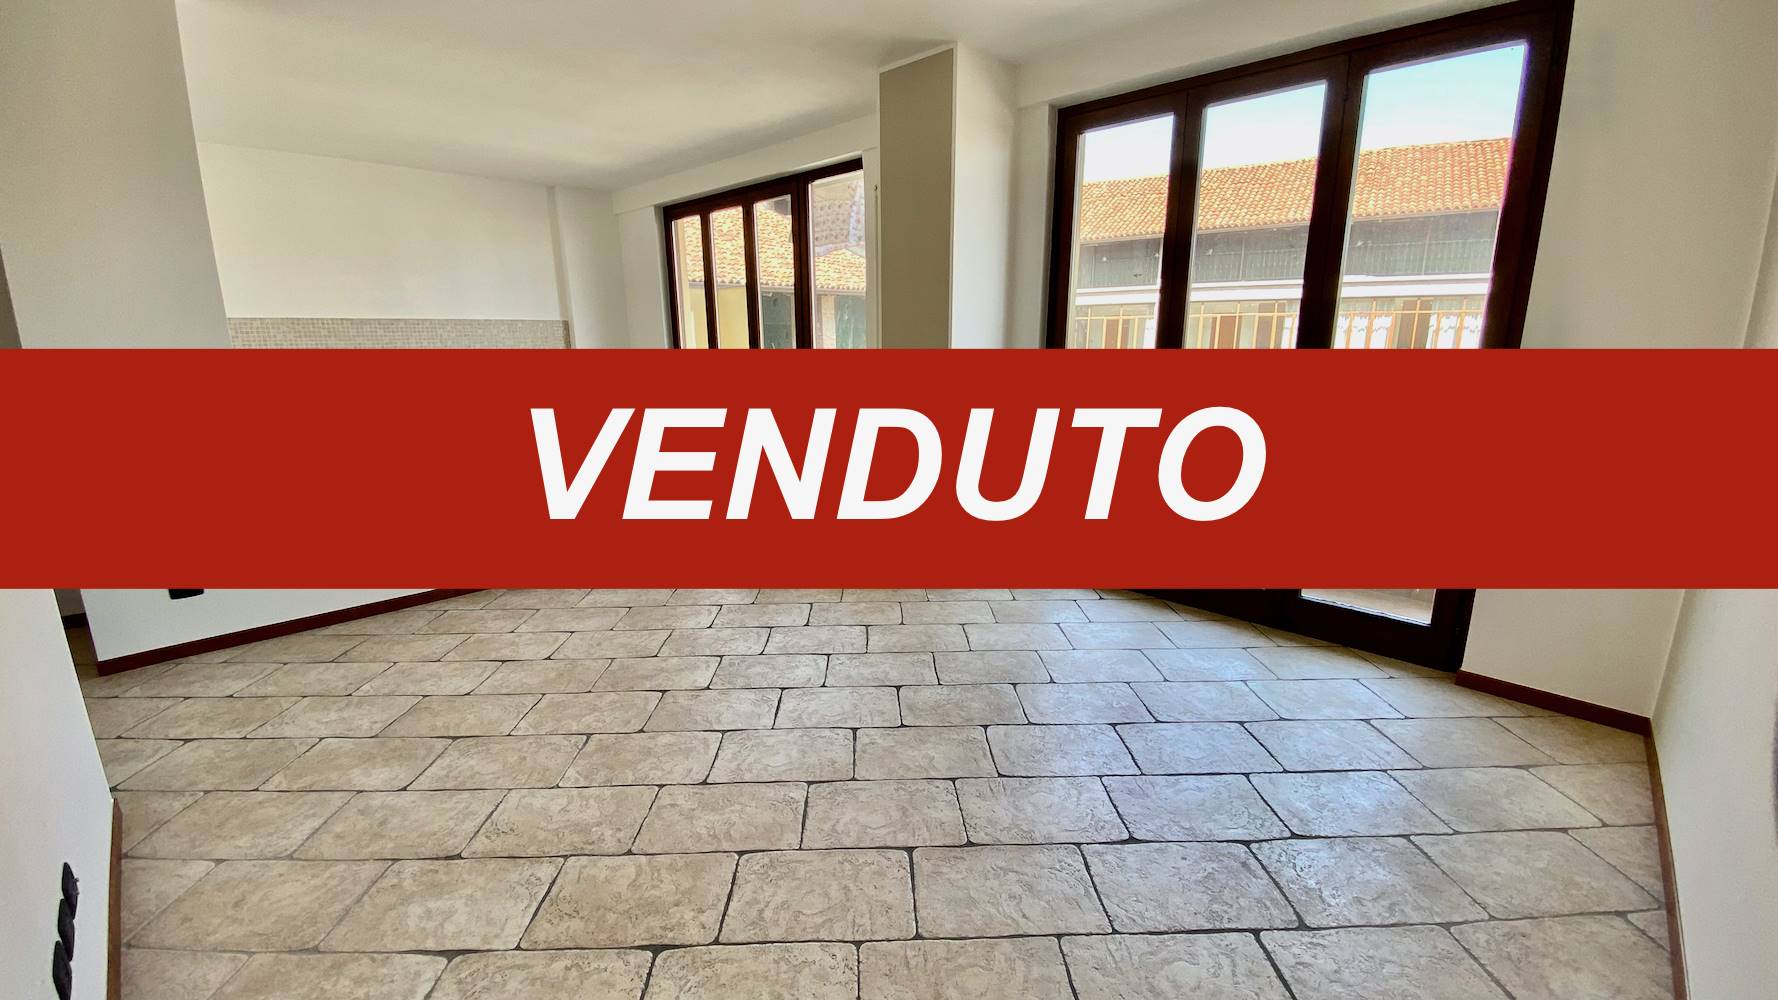 Appartamento in vendita a Madone, 3 locali, prezzo € 115.000 | CambioCasa.it